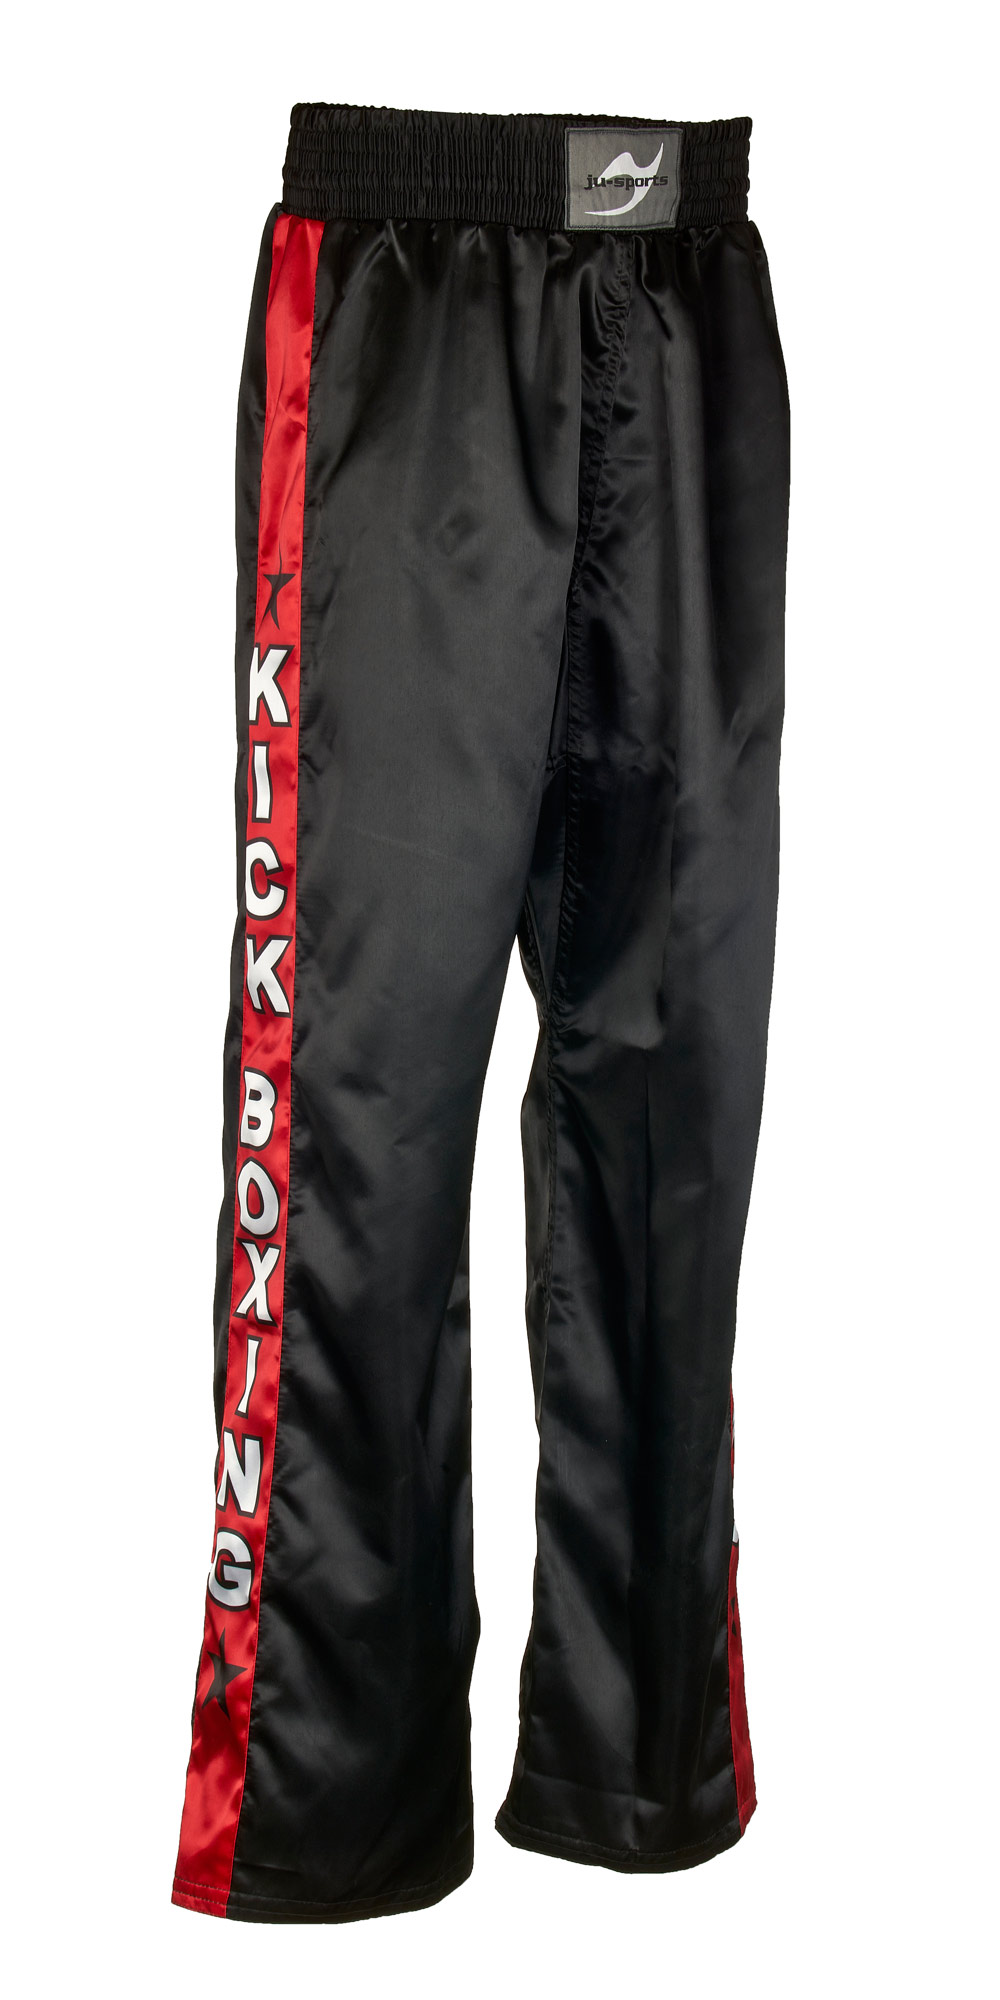 Kickboxhose Kick schwarz